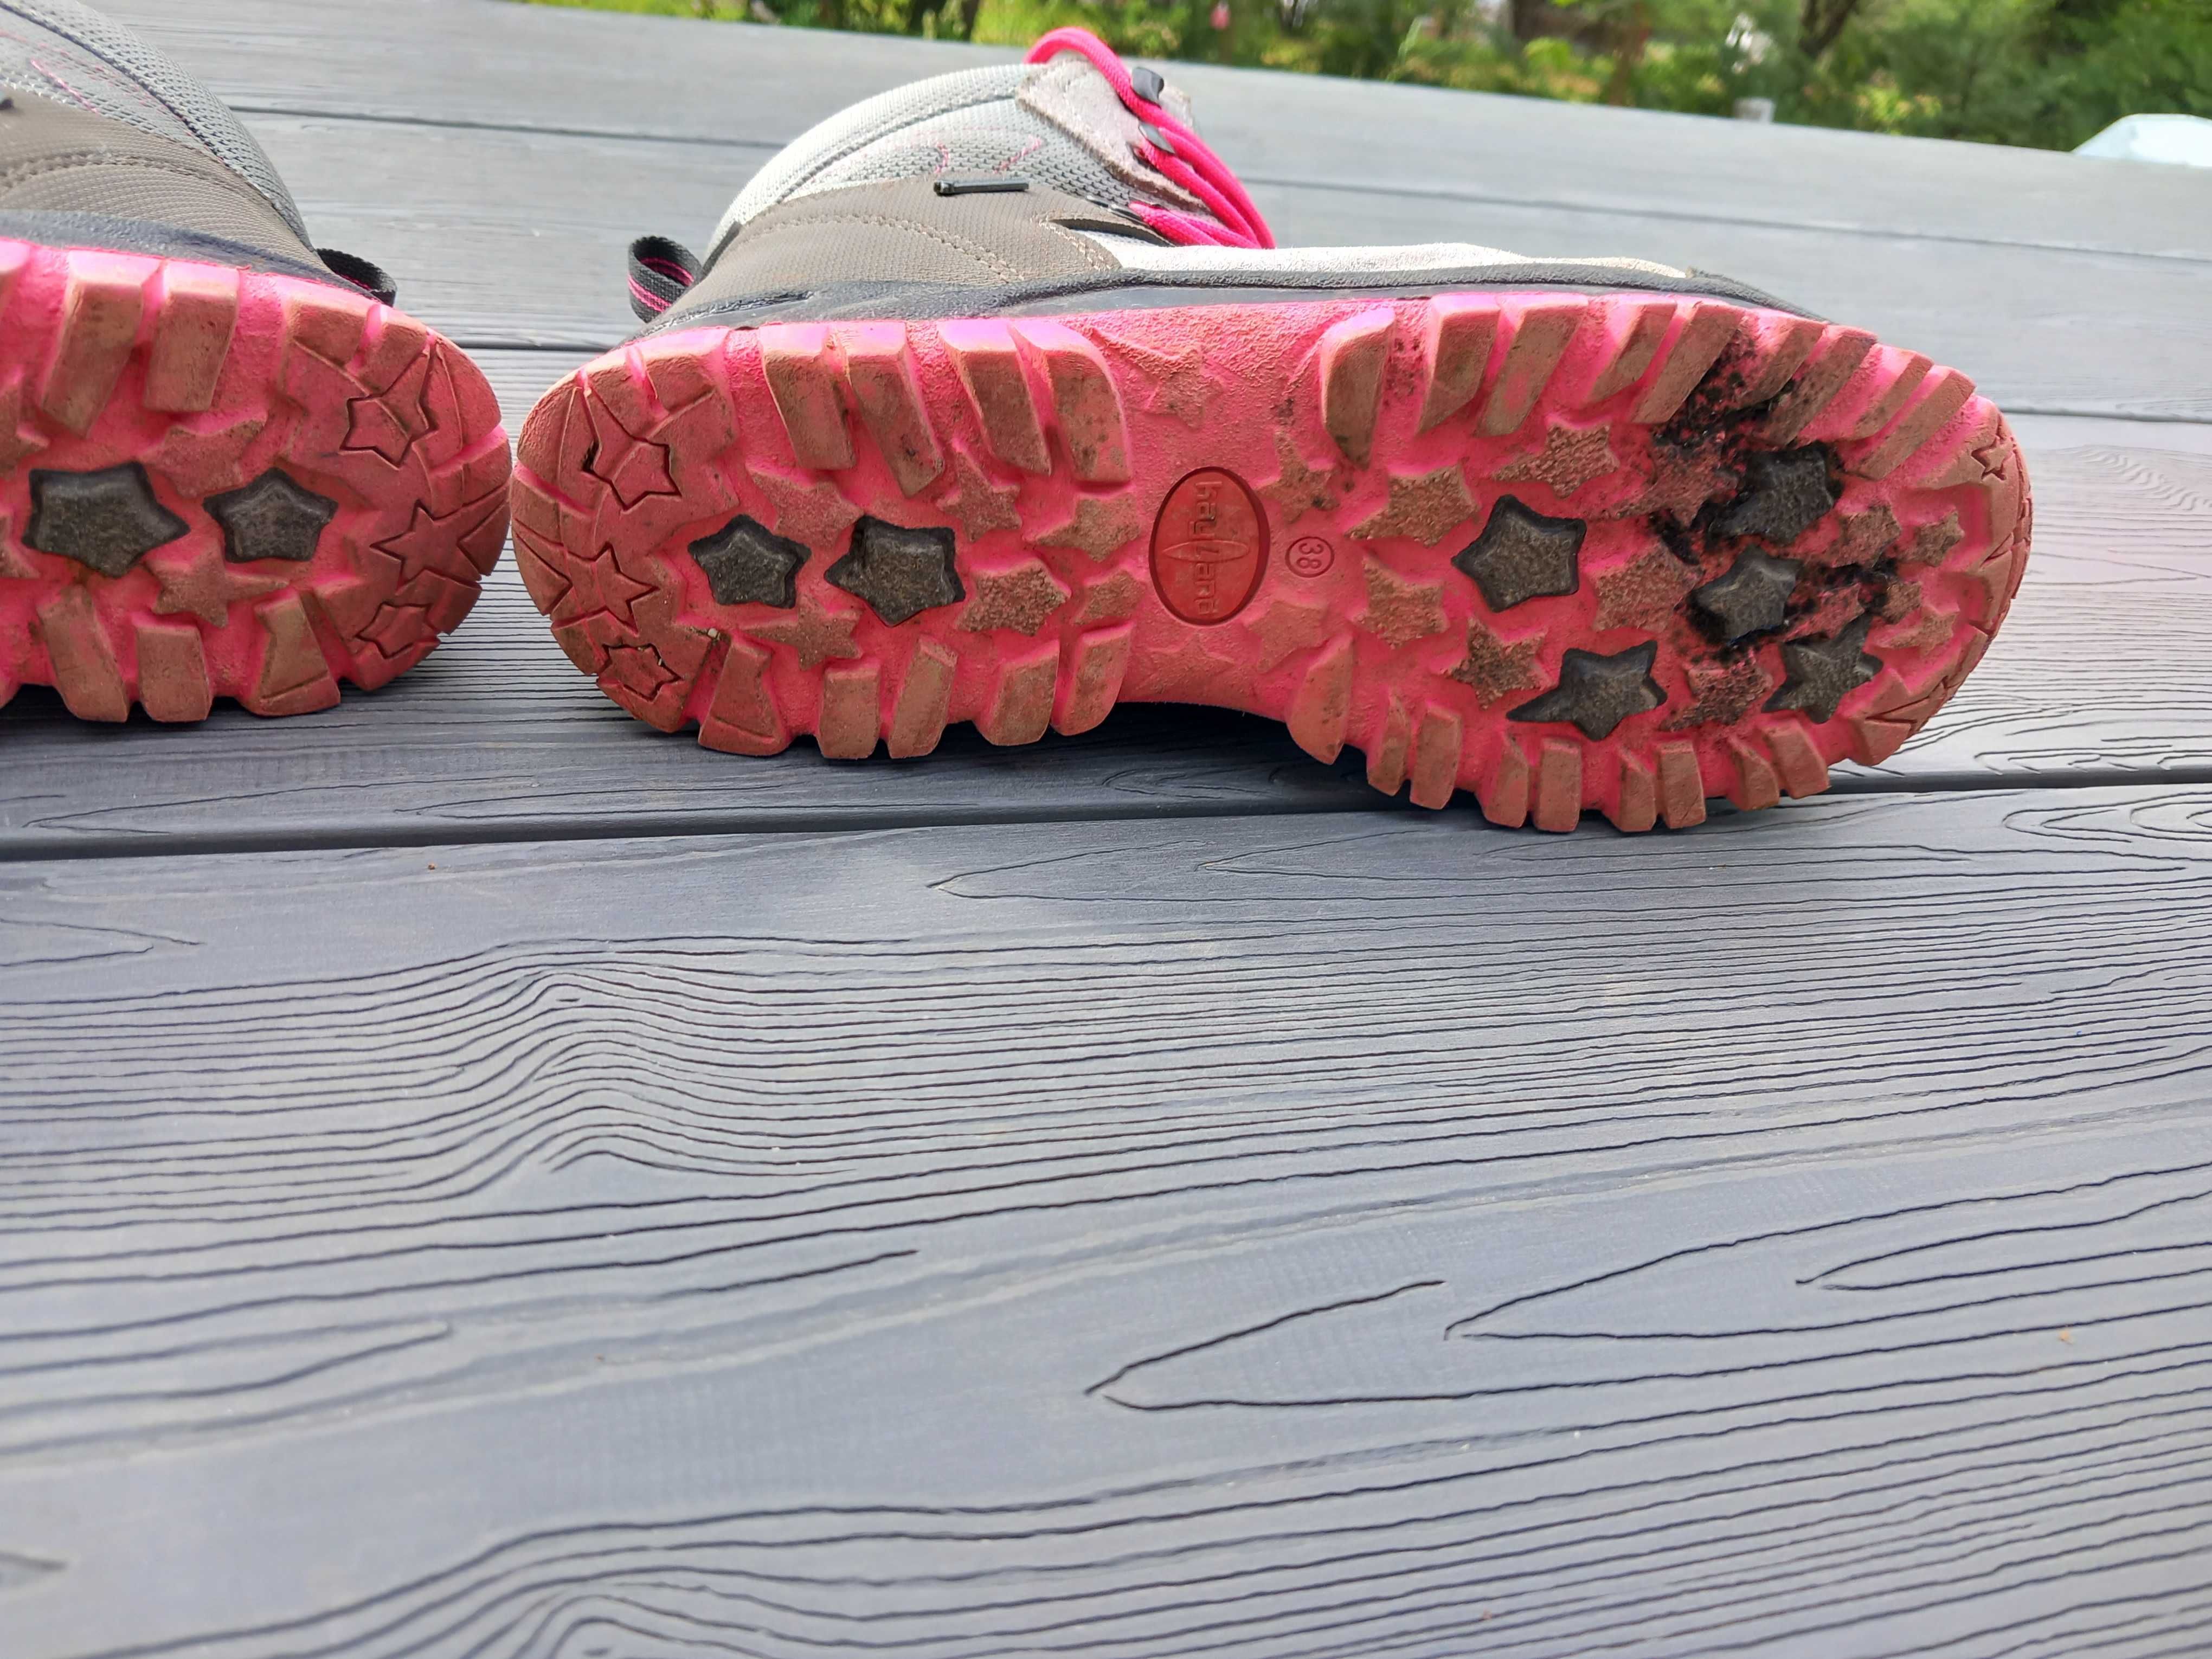 Детски туристически обувки Kayland за момиче розови, 38 номер